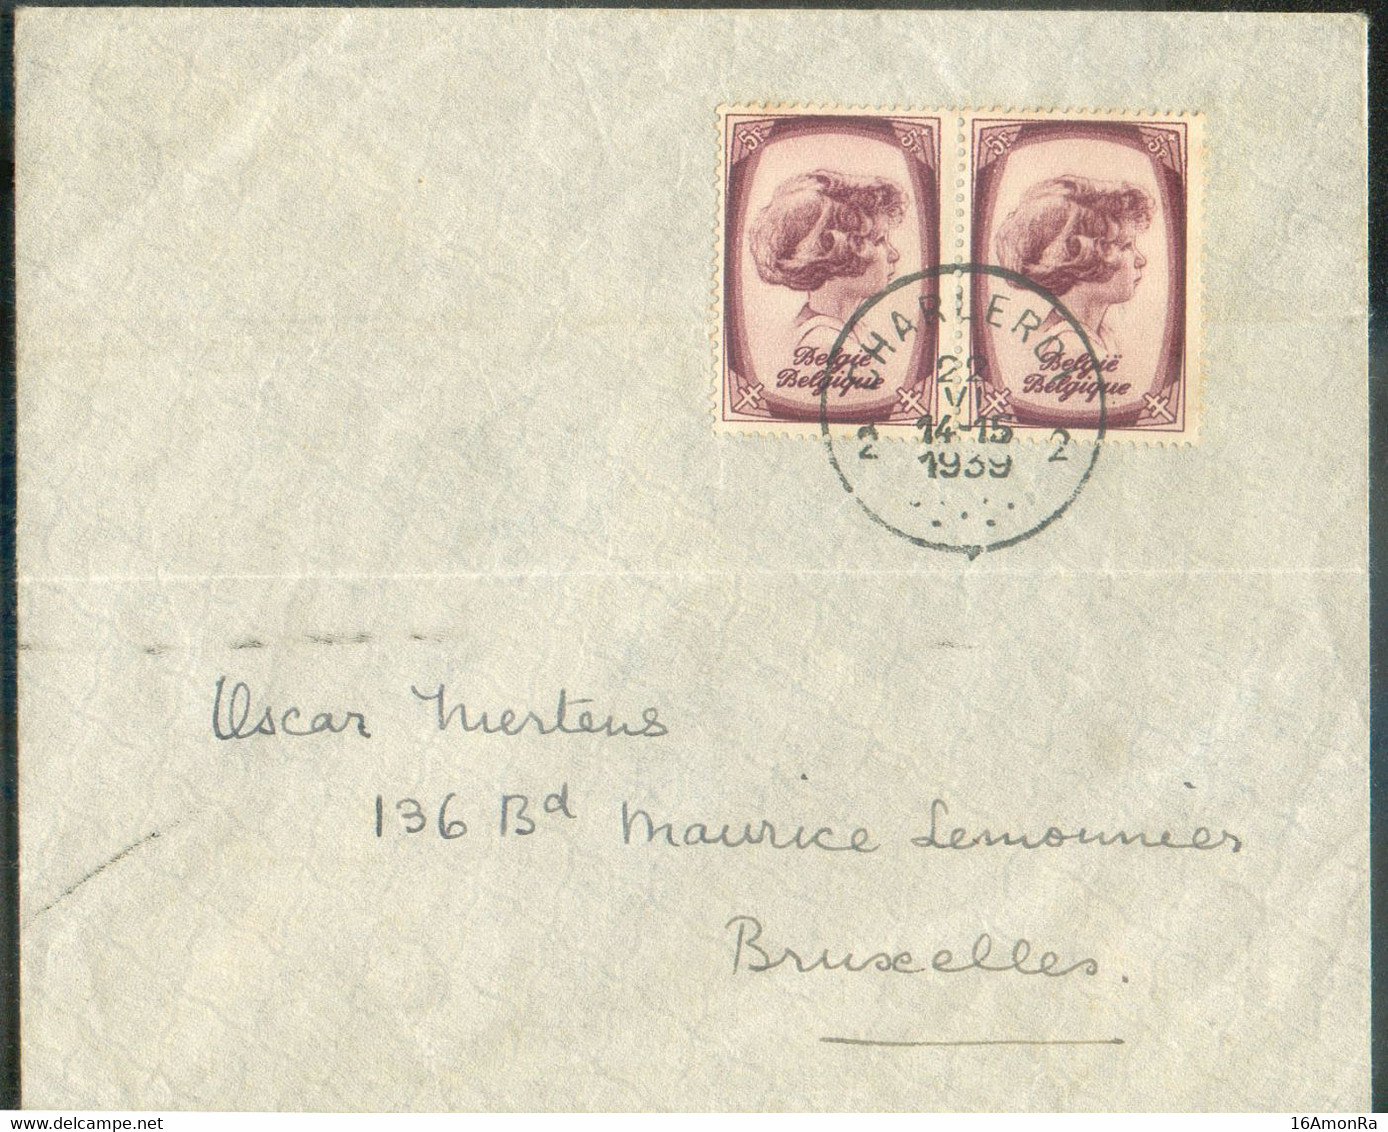 N°495(2) - 5Fr. PRINCE ALBERT (paire) Obl. Sc CHARLEROI 2 sur Enveloppe Du 22-VI-1939 Vers Bruxelles. - TB - 20425 - Lettres & Documents